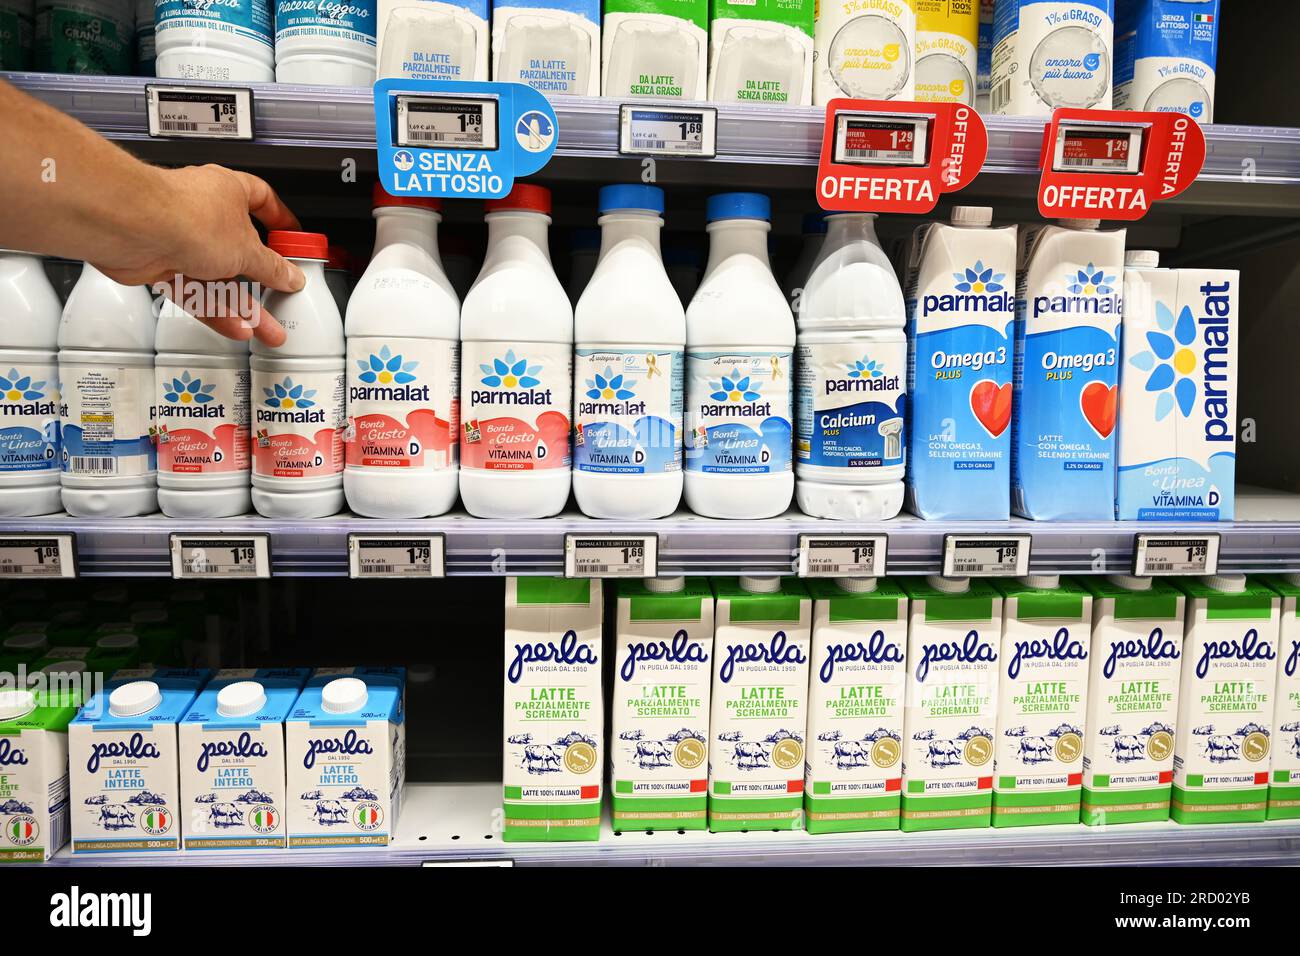 Cartons de lait d'origine italienne dans une épicerie Banque D'Images